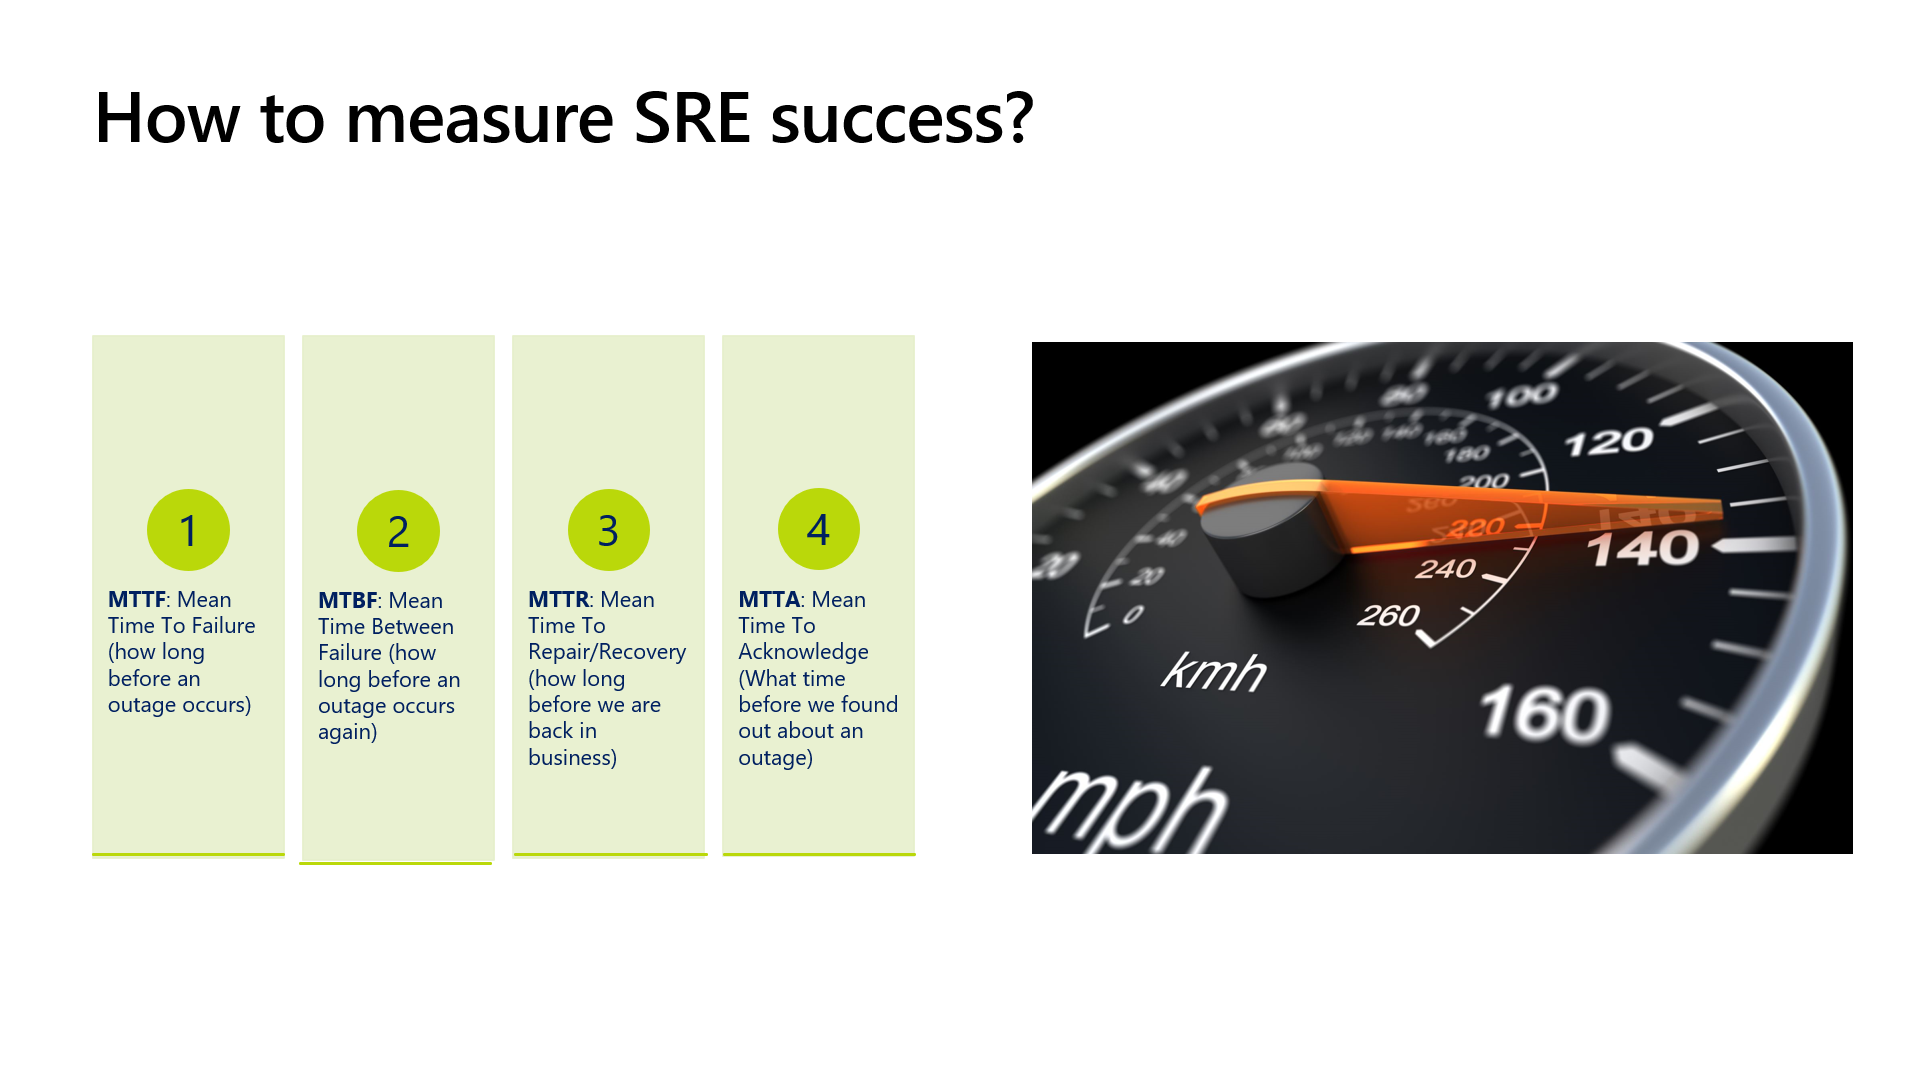 Measure SRE success